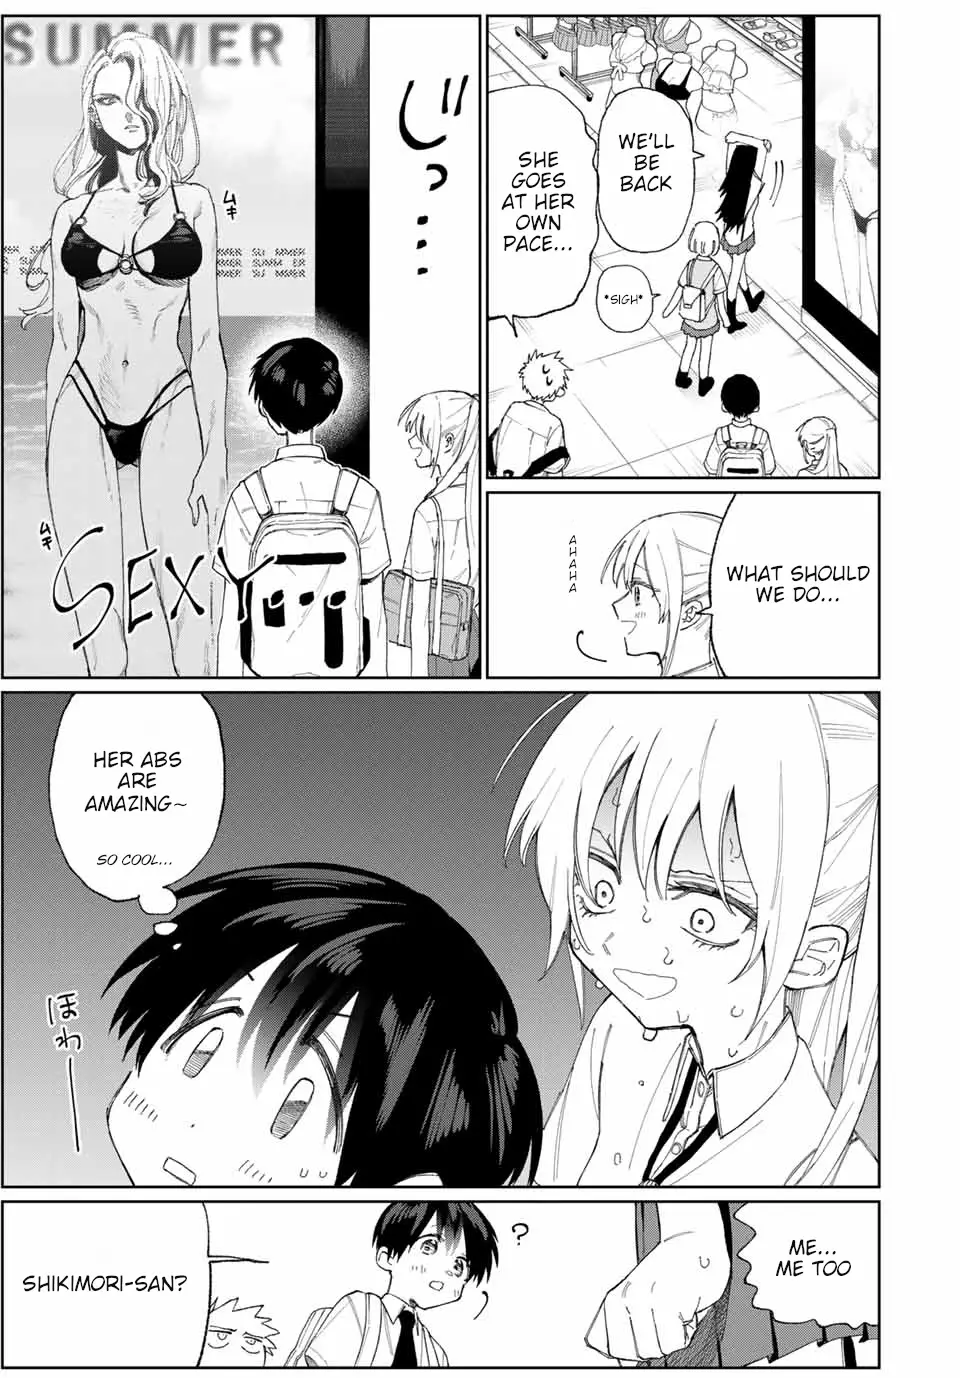 Shikimori's Not Just A Cutie - 27 page 6